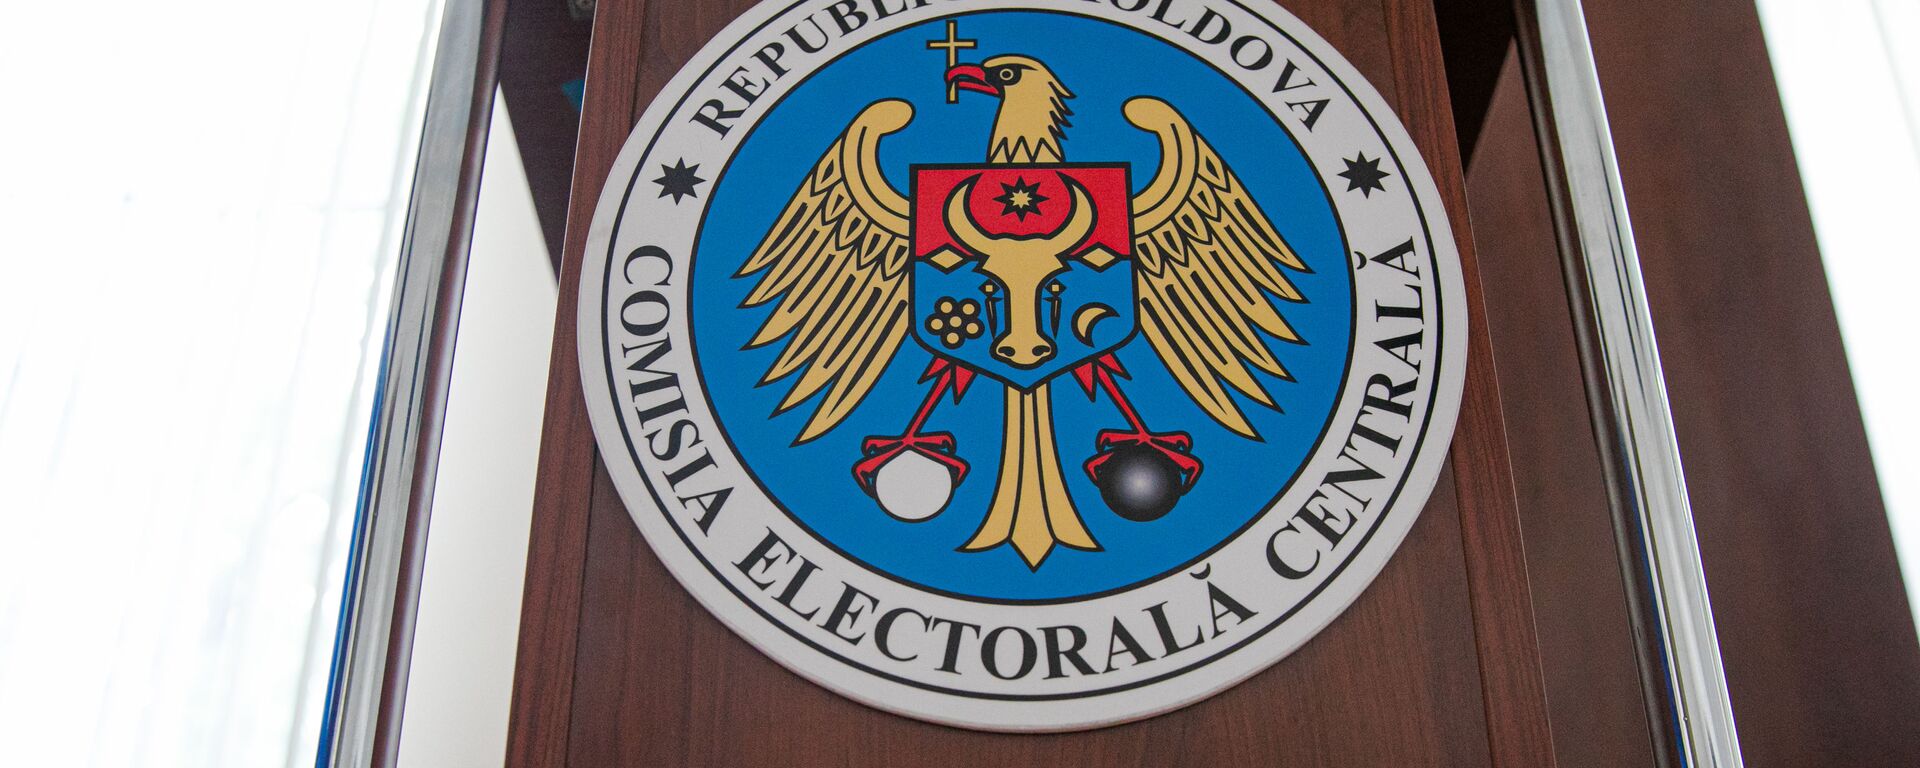 Comisia Electorală Centrală a Republcii Moldova  - Sputnik Moldova, 1920, 04.12.2021